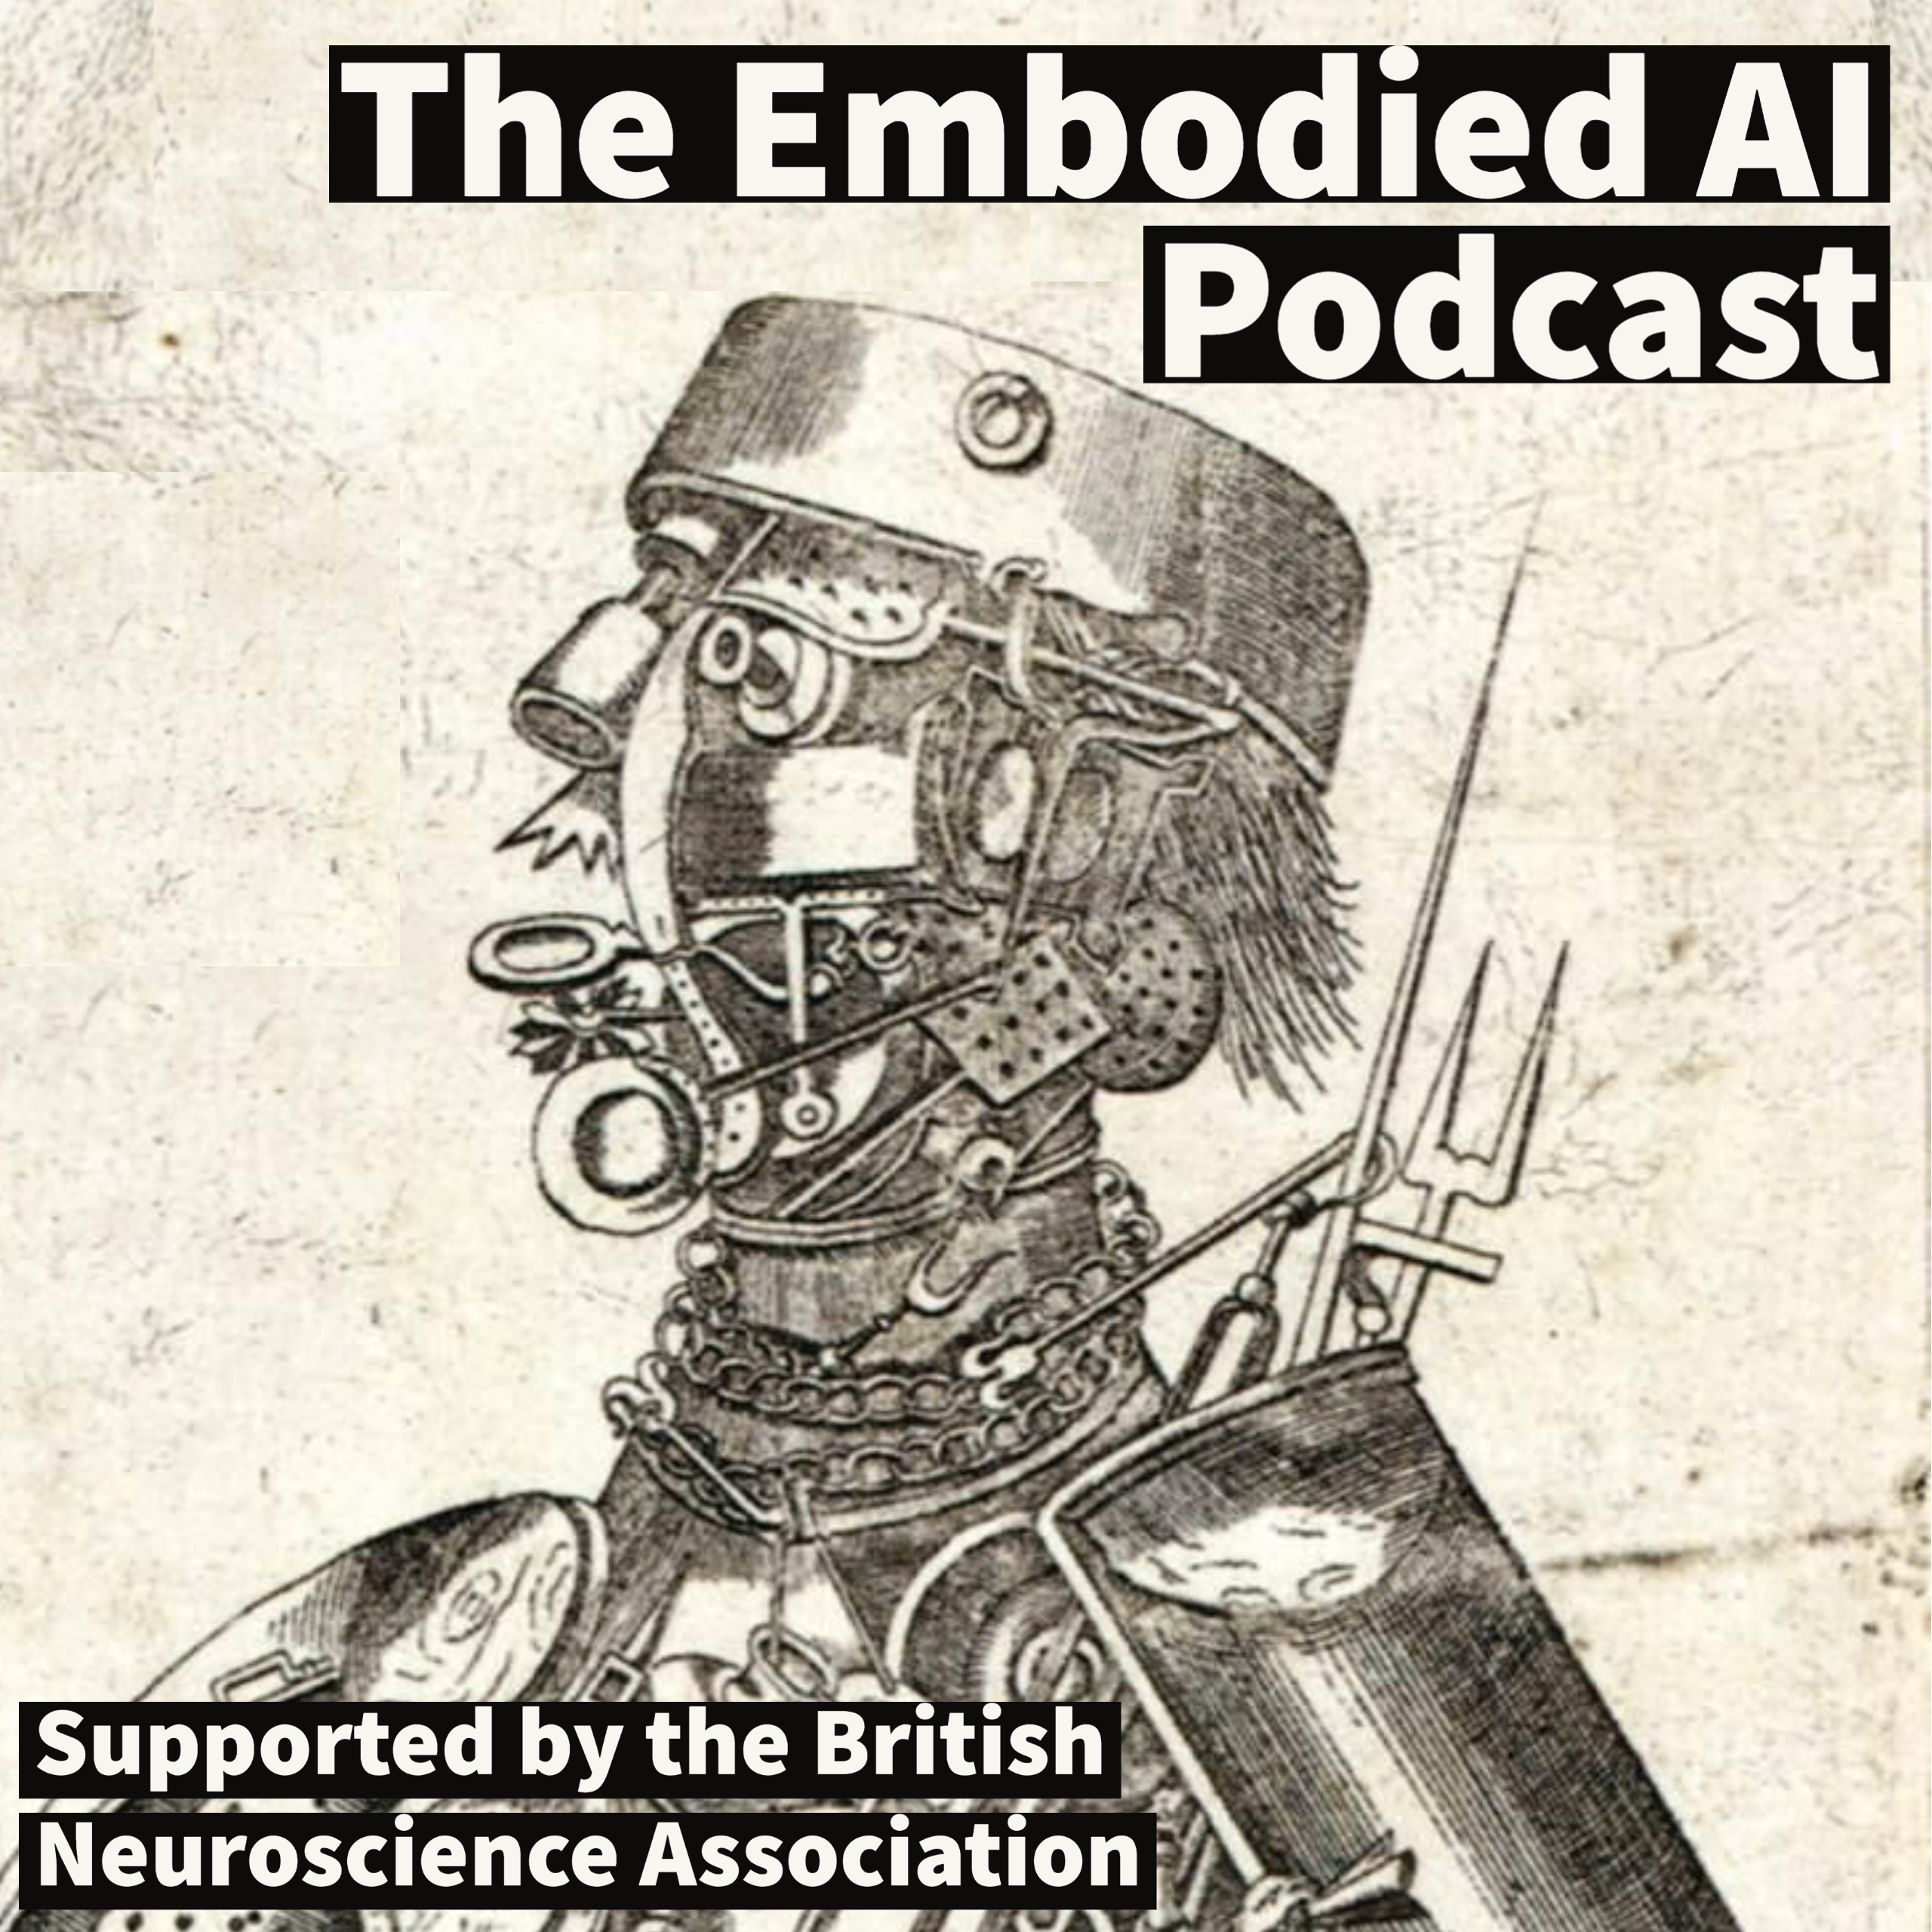 AI Podcast